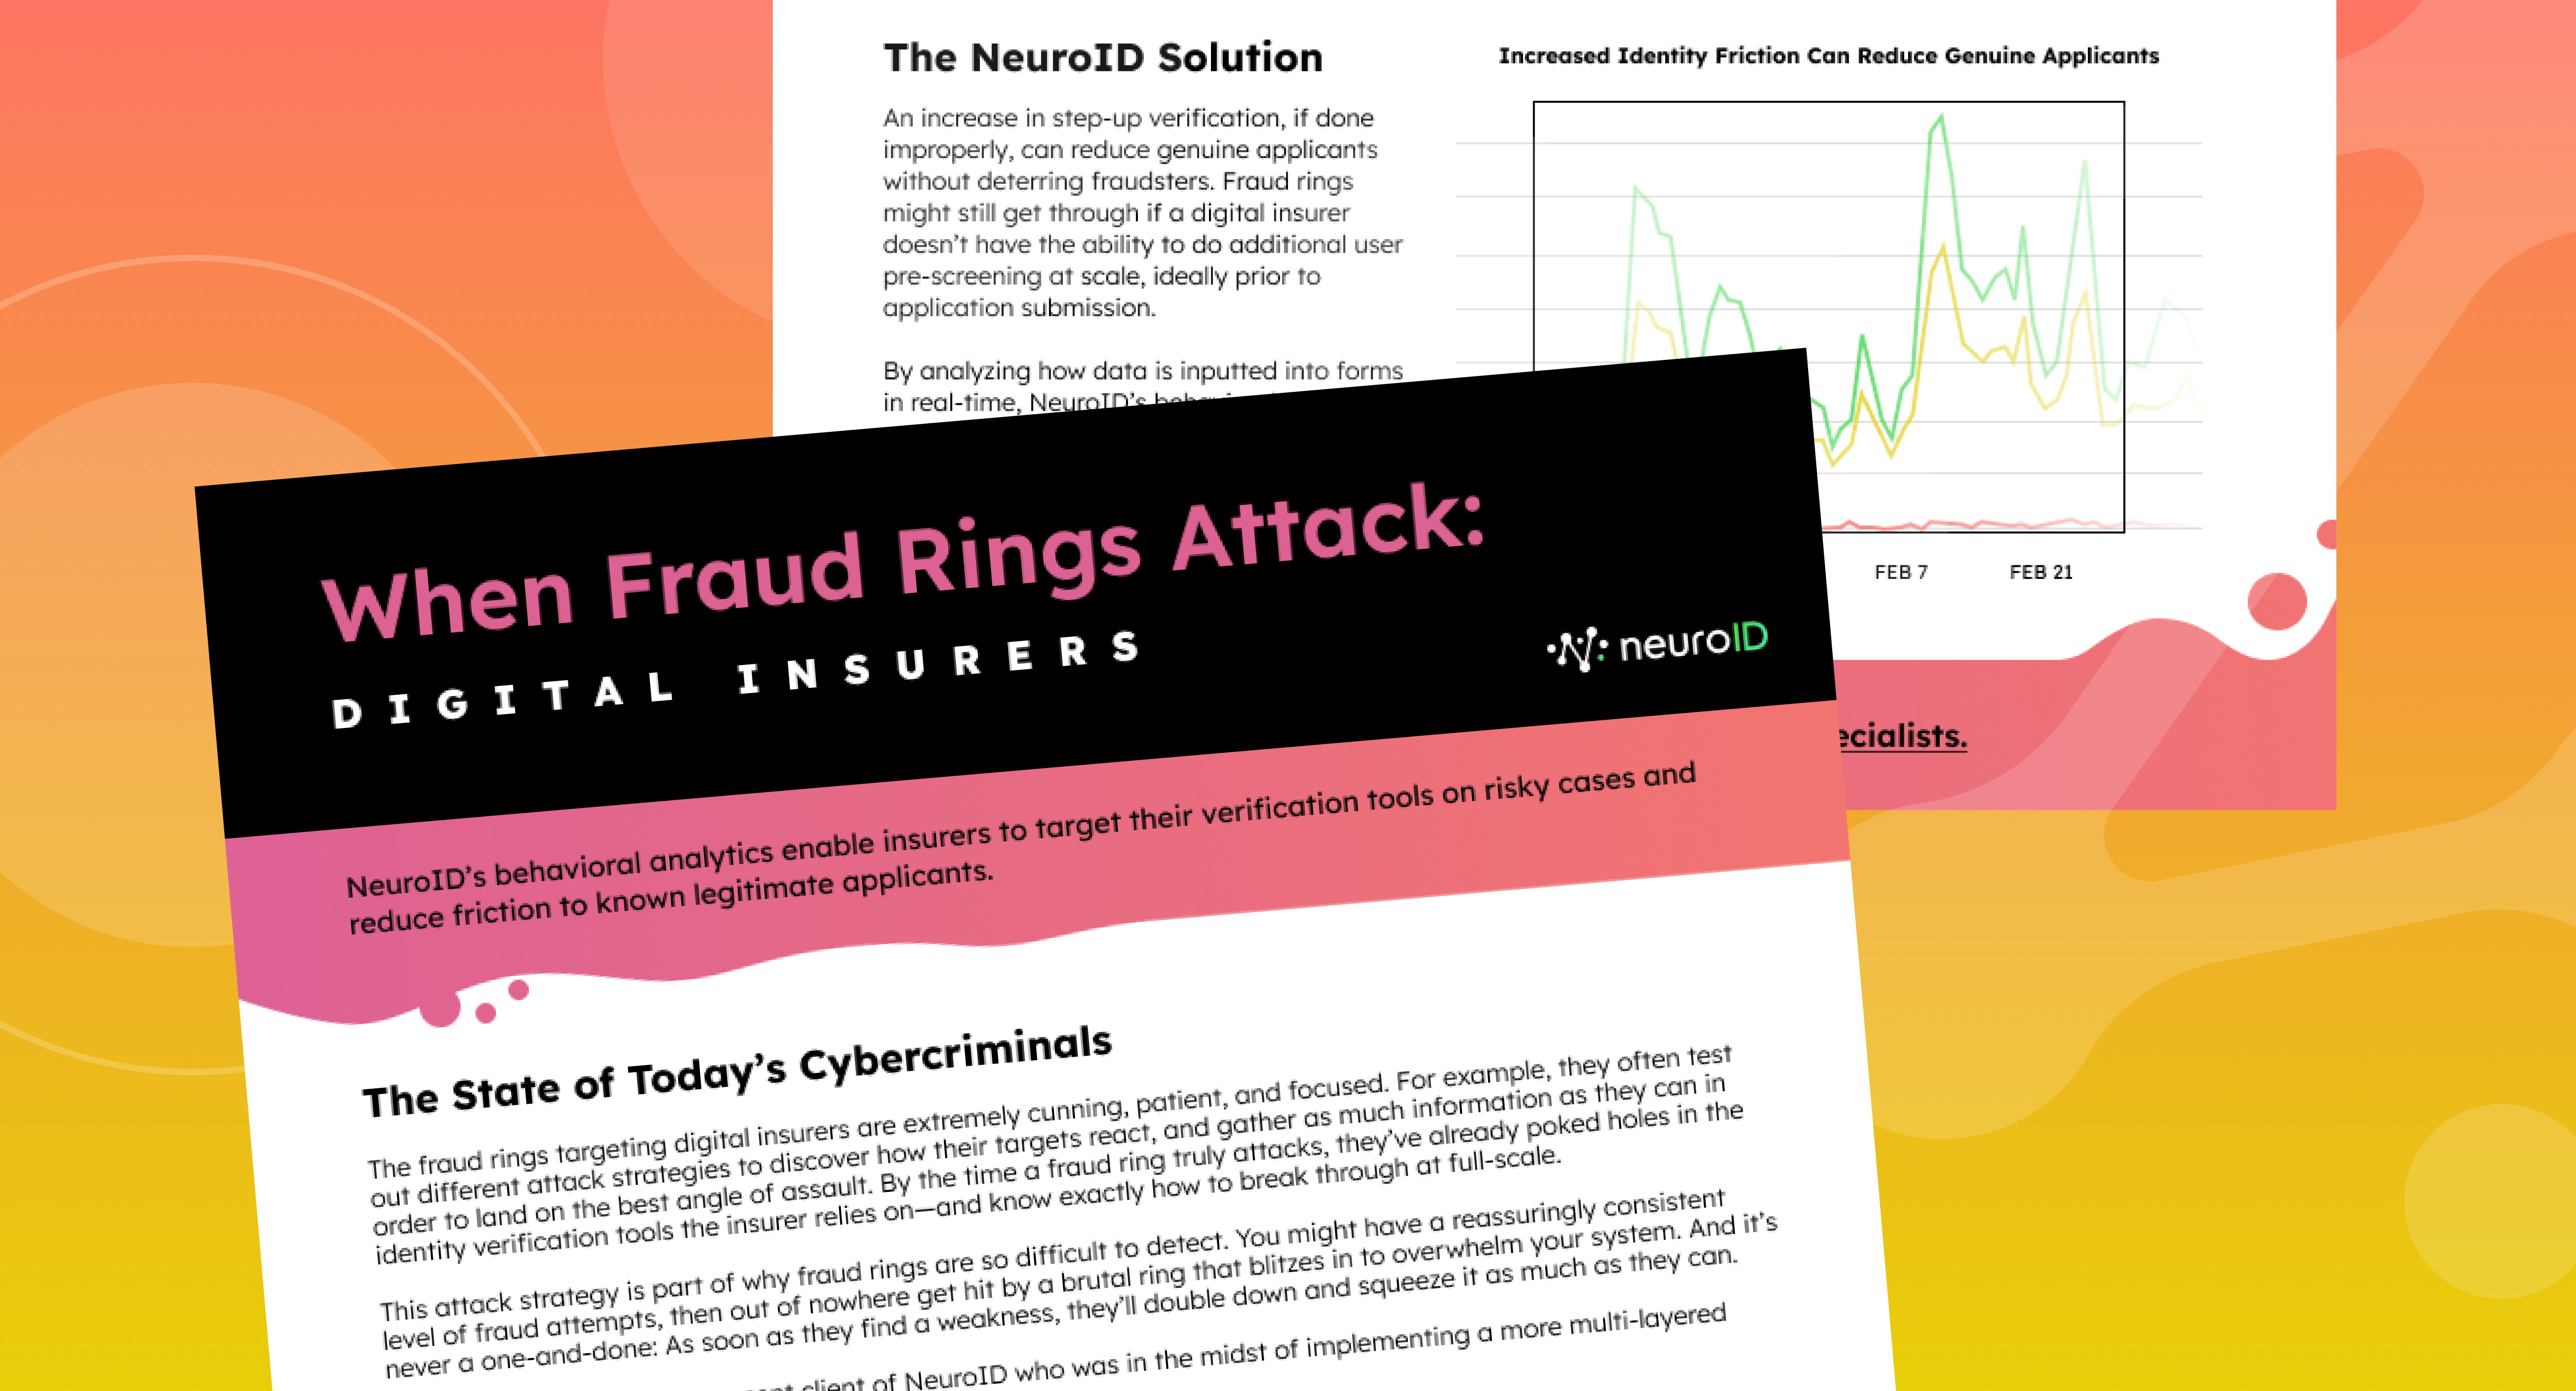 When Fraud Rings Attack: Digital Insurer